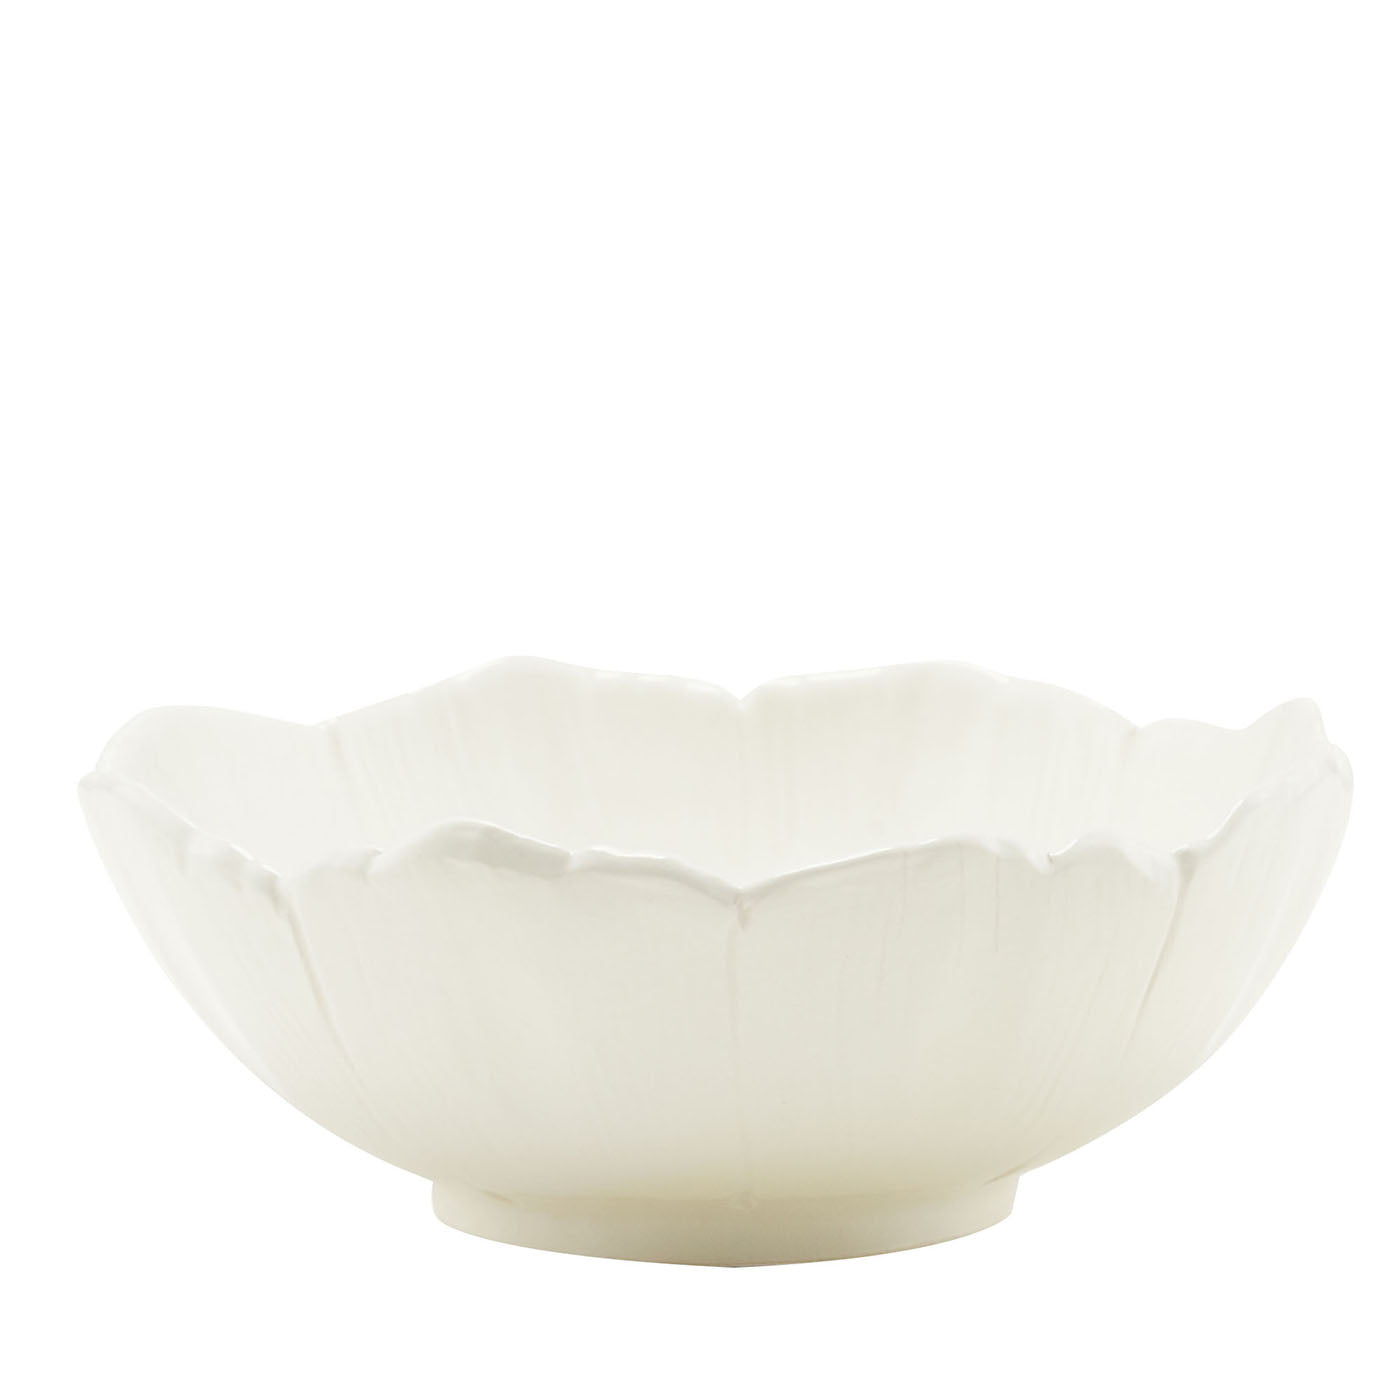 Juego de 2 platos hondos de cerámica fina color blanco roto Flor de Cerezo  - Vista principal